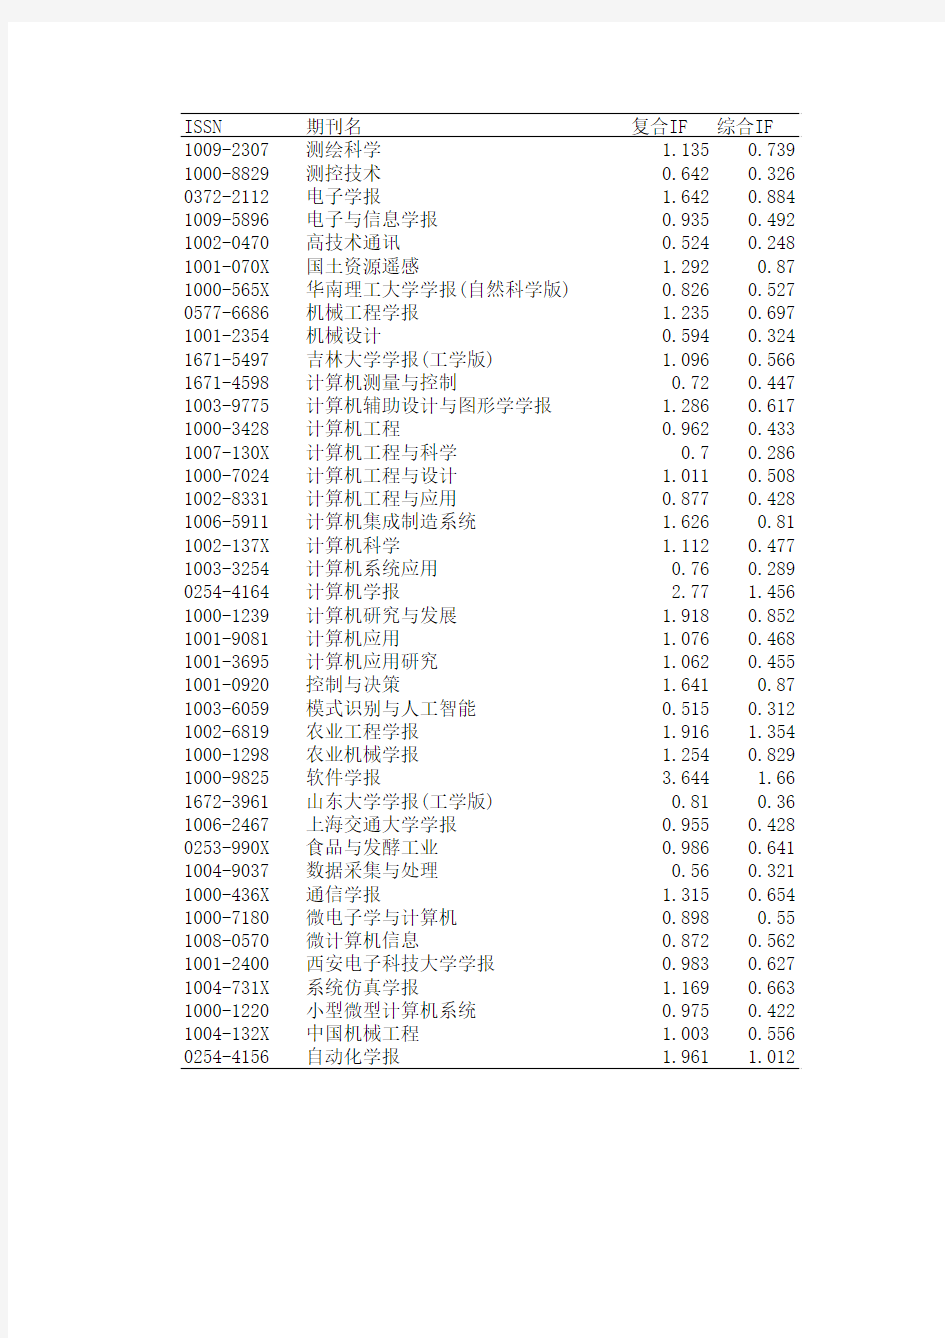 CSCD 中文核心期刊_计算机应用类